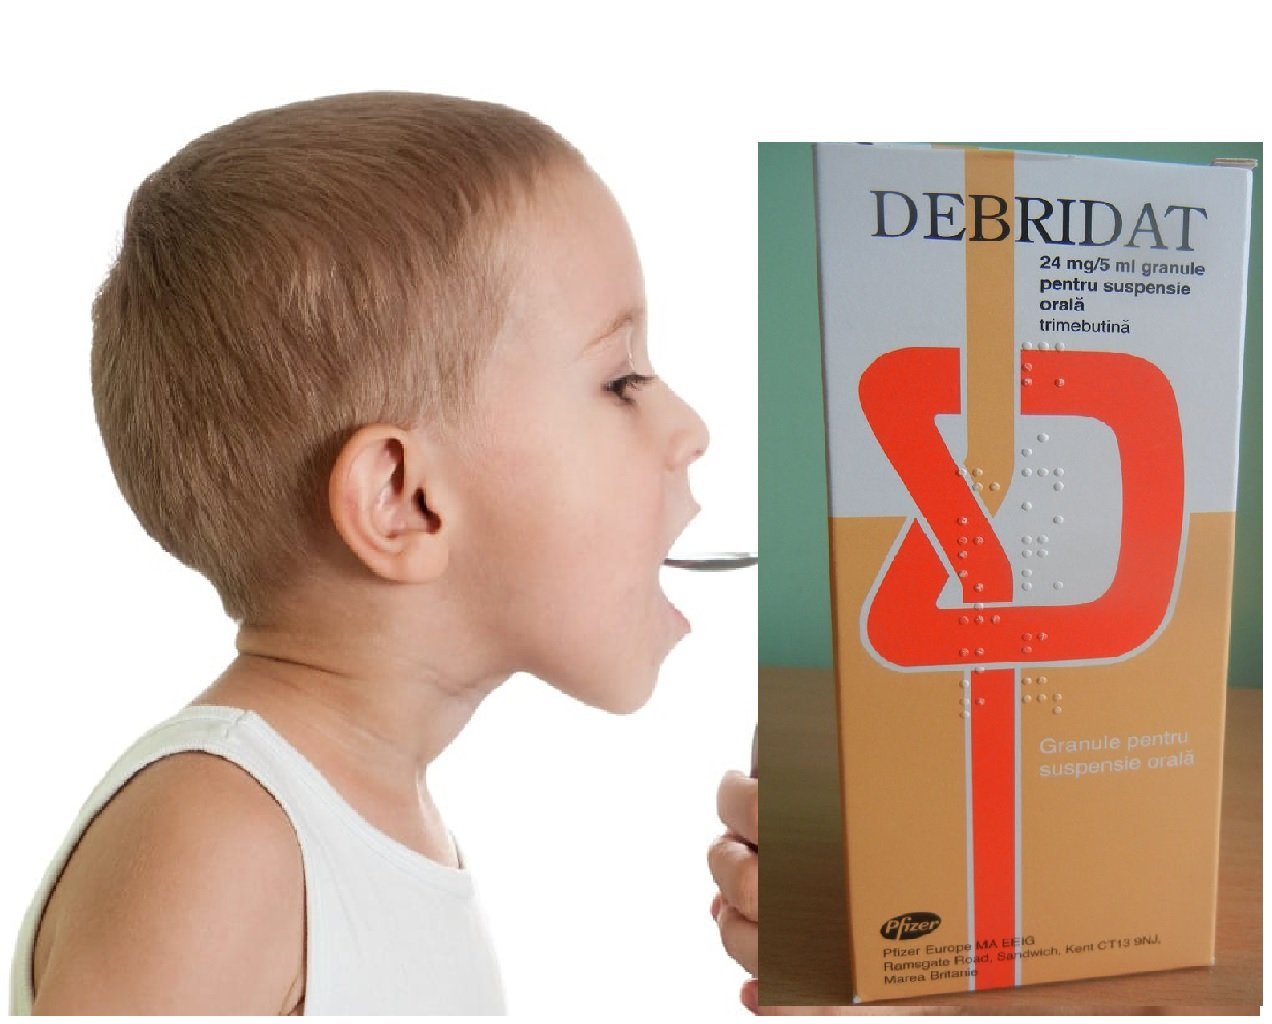  ATENȚIE PĂRINȚI! Debridat suspensie orală, unul dintre cele mai folosite siropuri pentru afecţiuni gastrointestinale la copii, retras din farmacii!